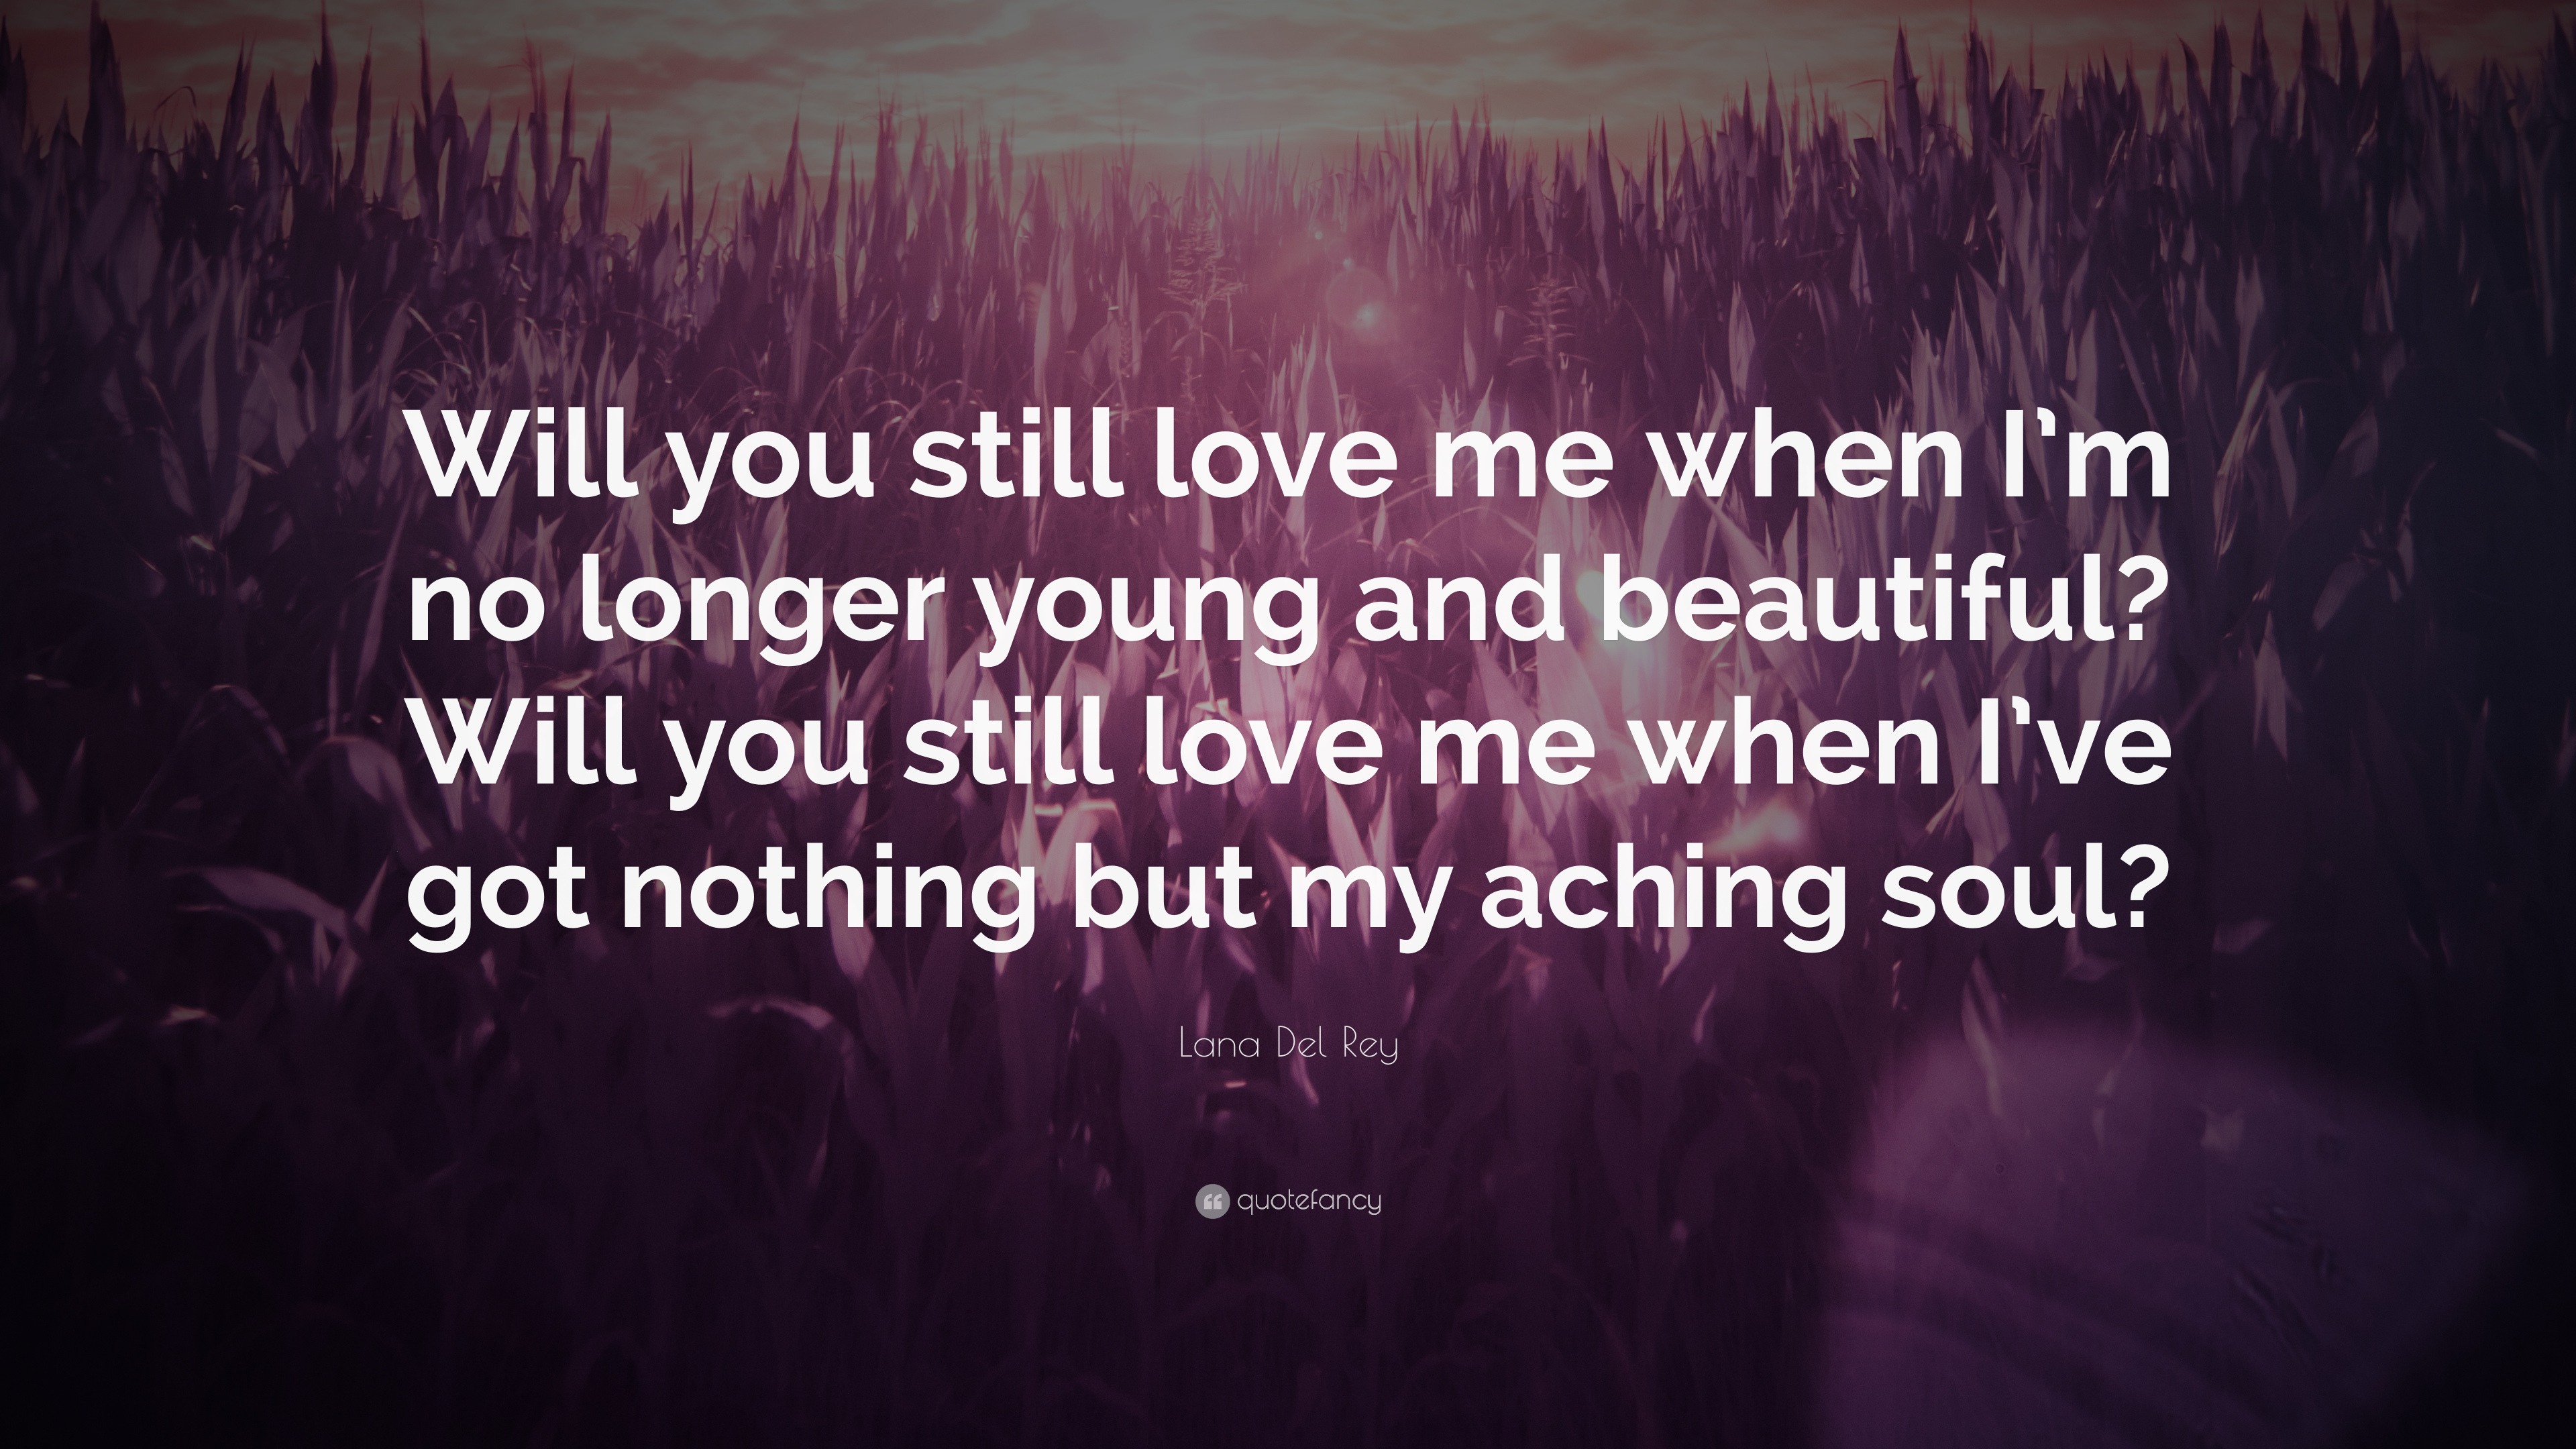 Lana Del Rey Quote “Will you still love me when I m no